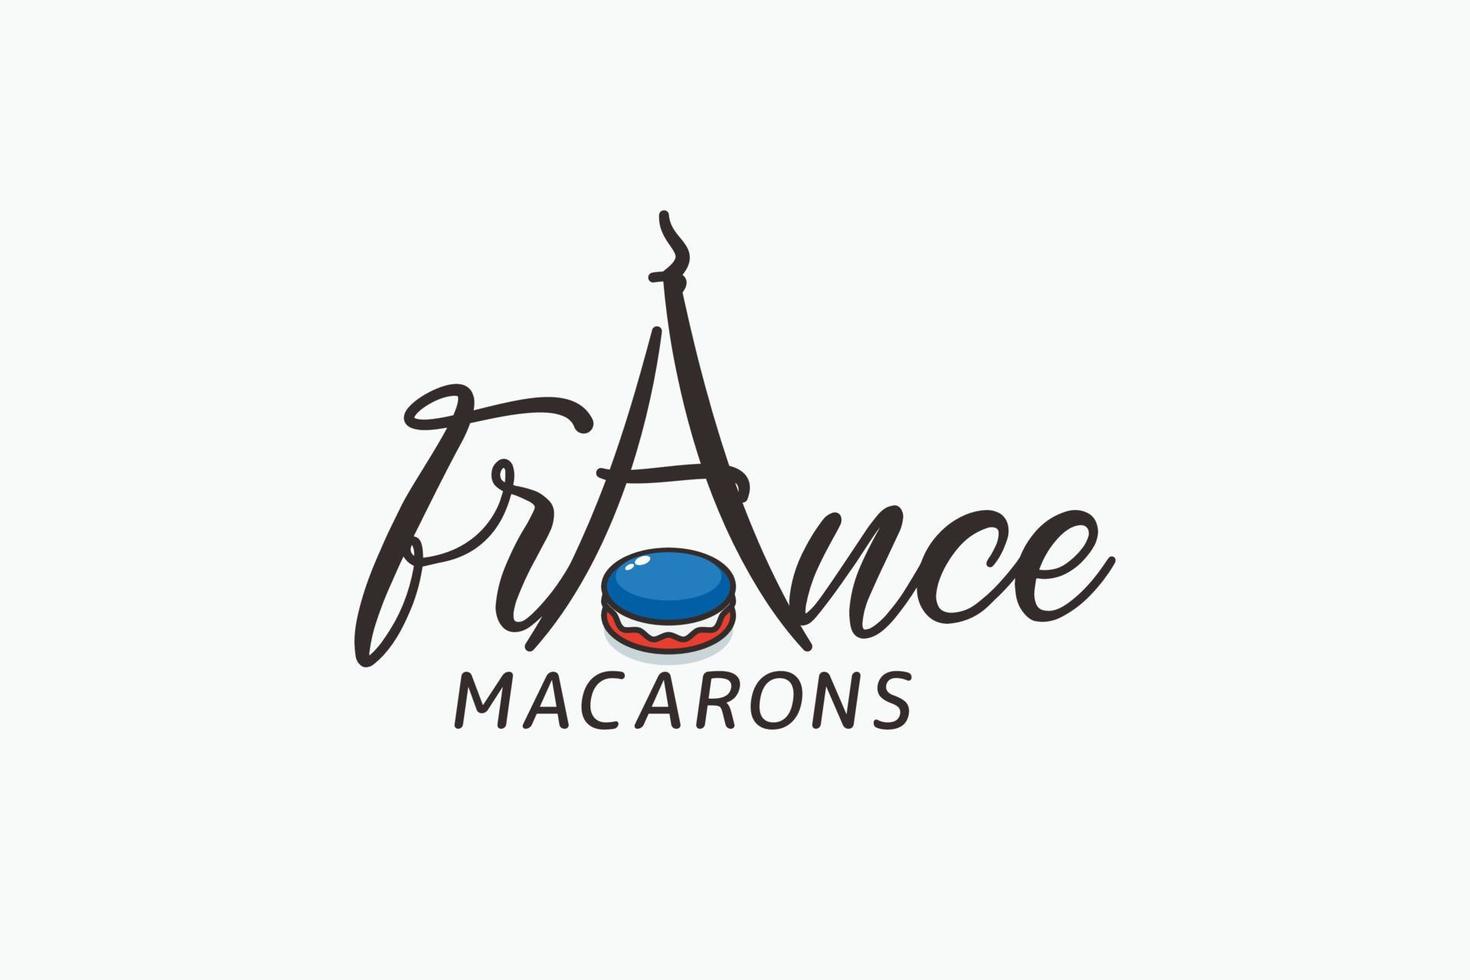 macarons logo con un macarons y eiffel torre como letra un para ninguna negocio, especialmente pastelería, panadería, cafetería, etc. vector